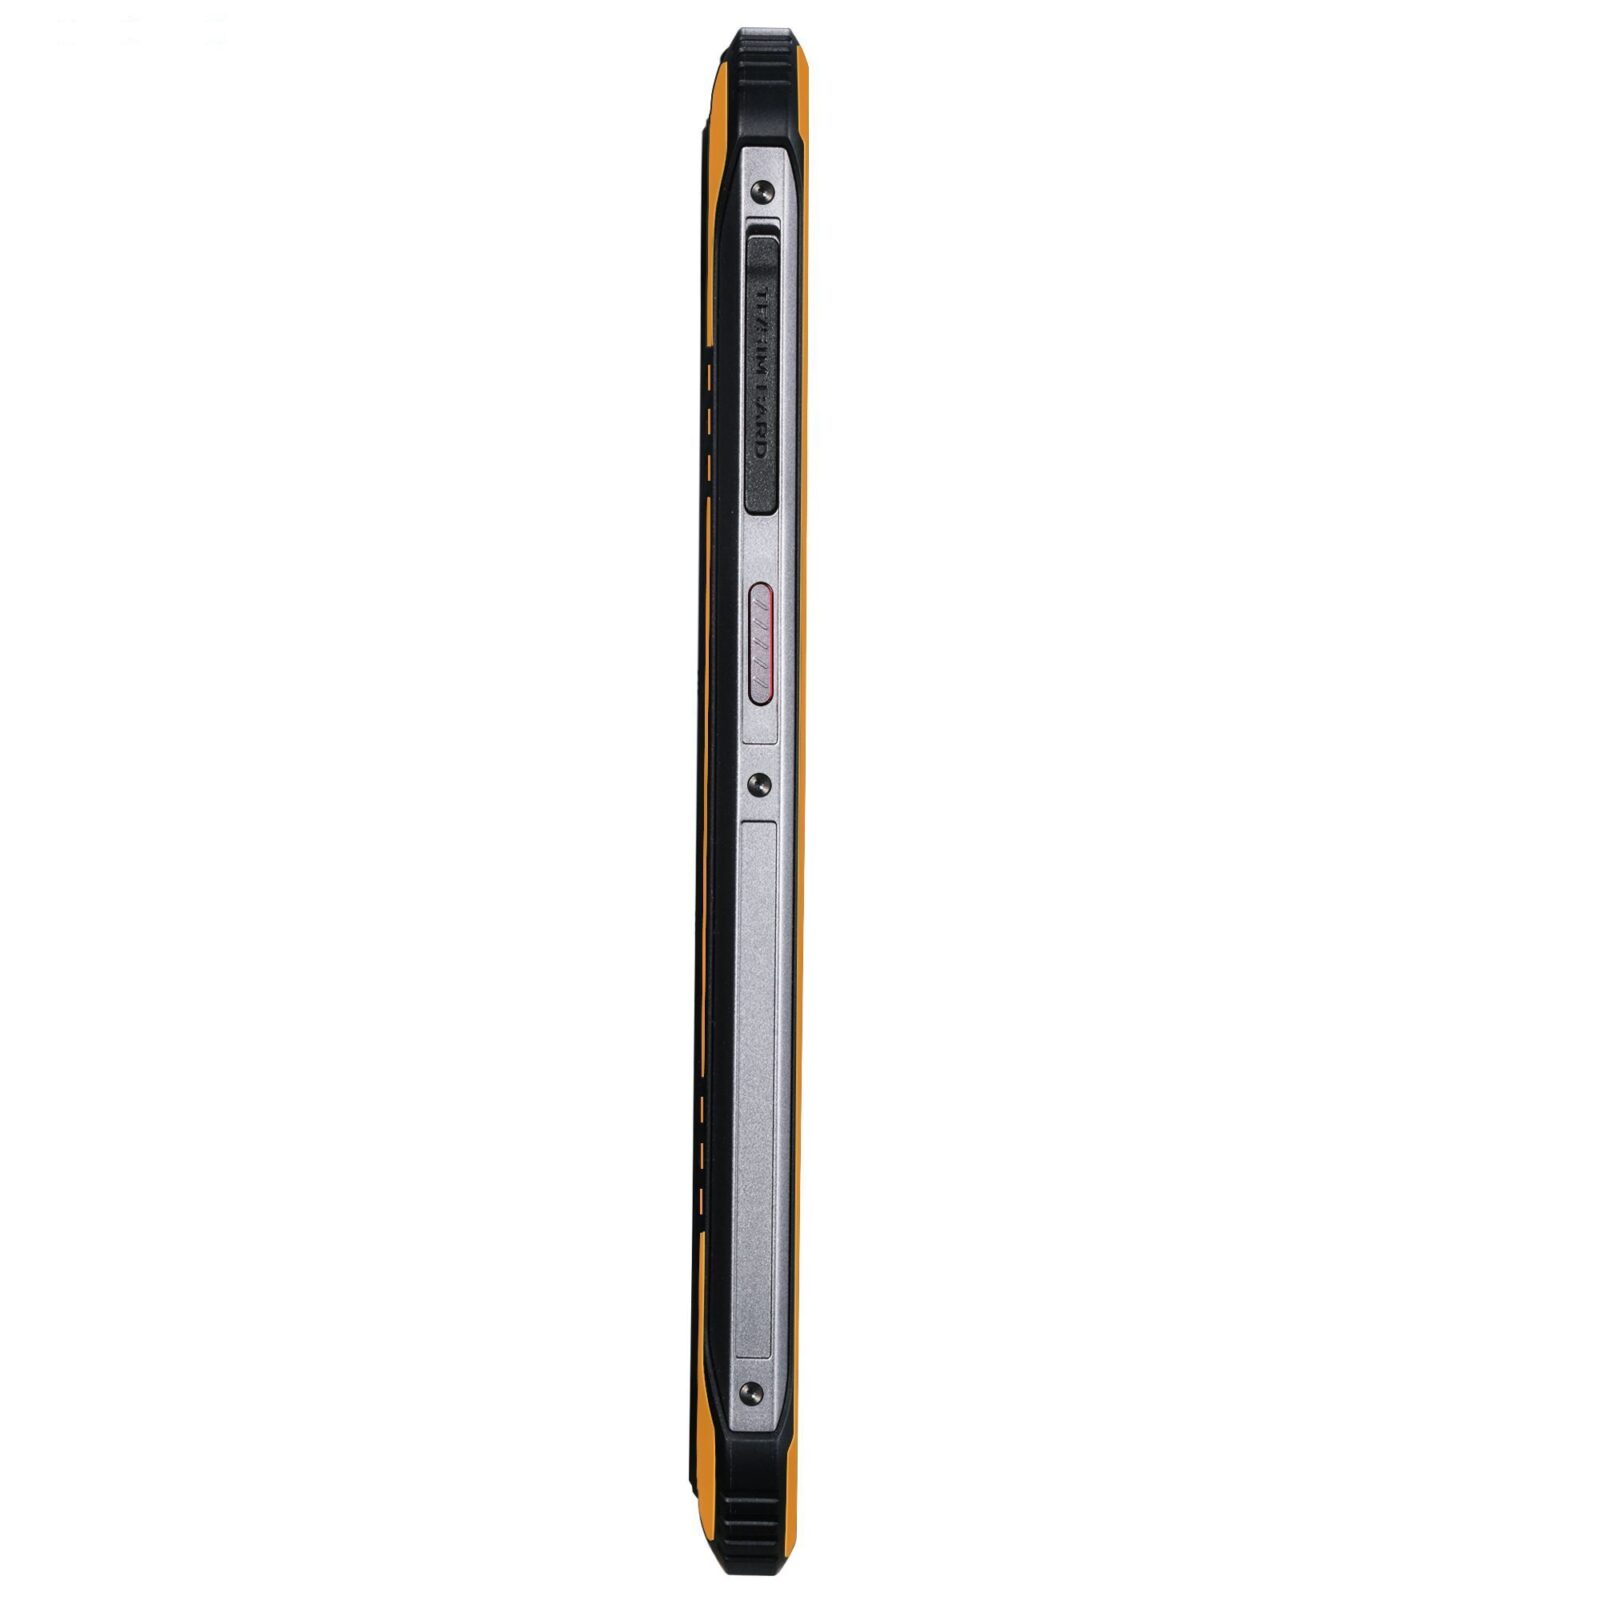 گوشی موبایل دوجی مدل S40 دو سیم کارت ظرفیت 32 گیگابایت